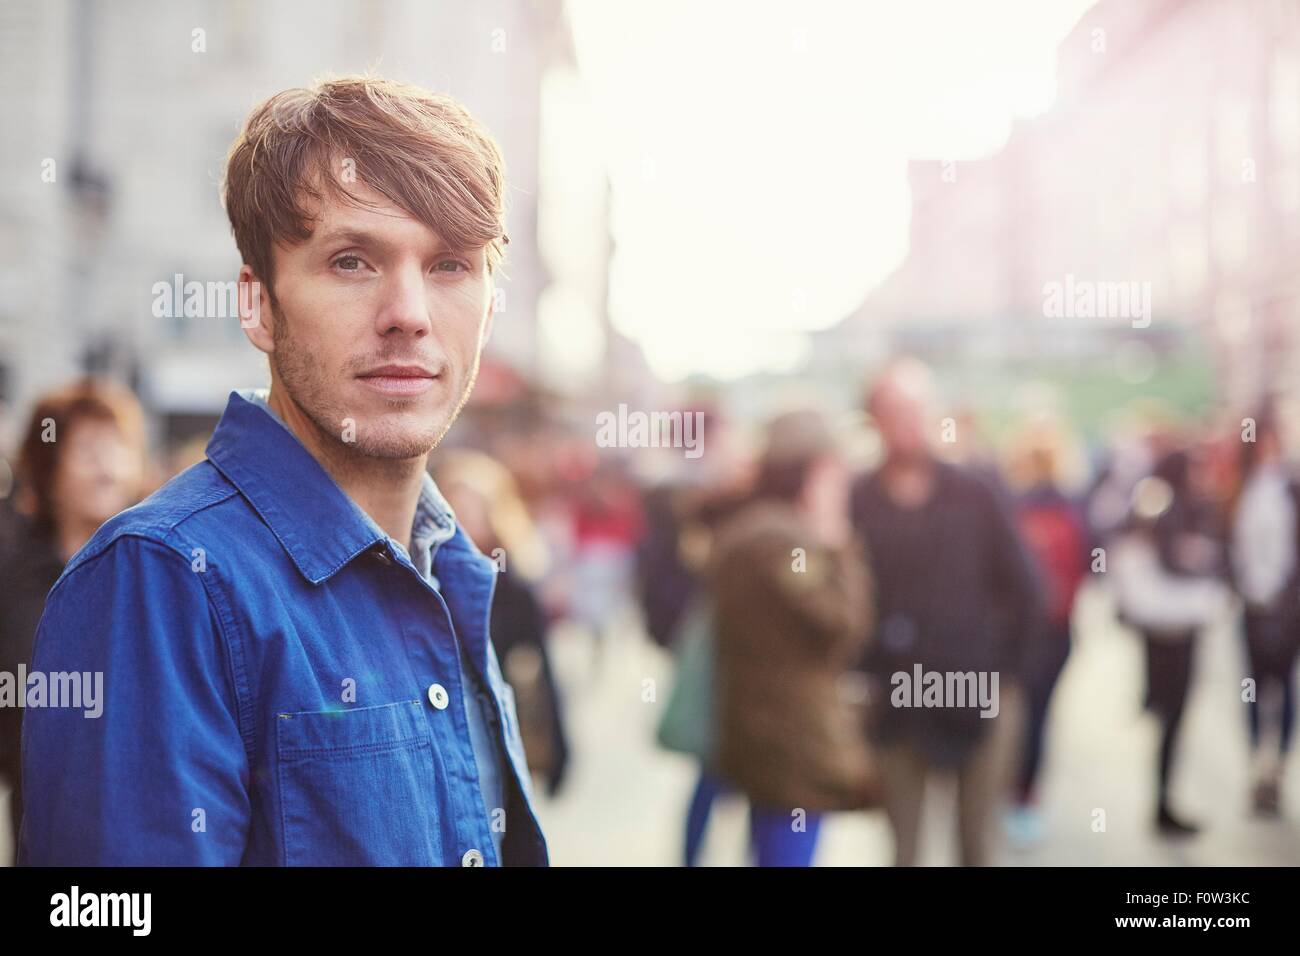 Ritratto di metà uomo adulto sulla strada affollata, London, Regno Unito Foto Stock